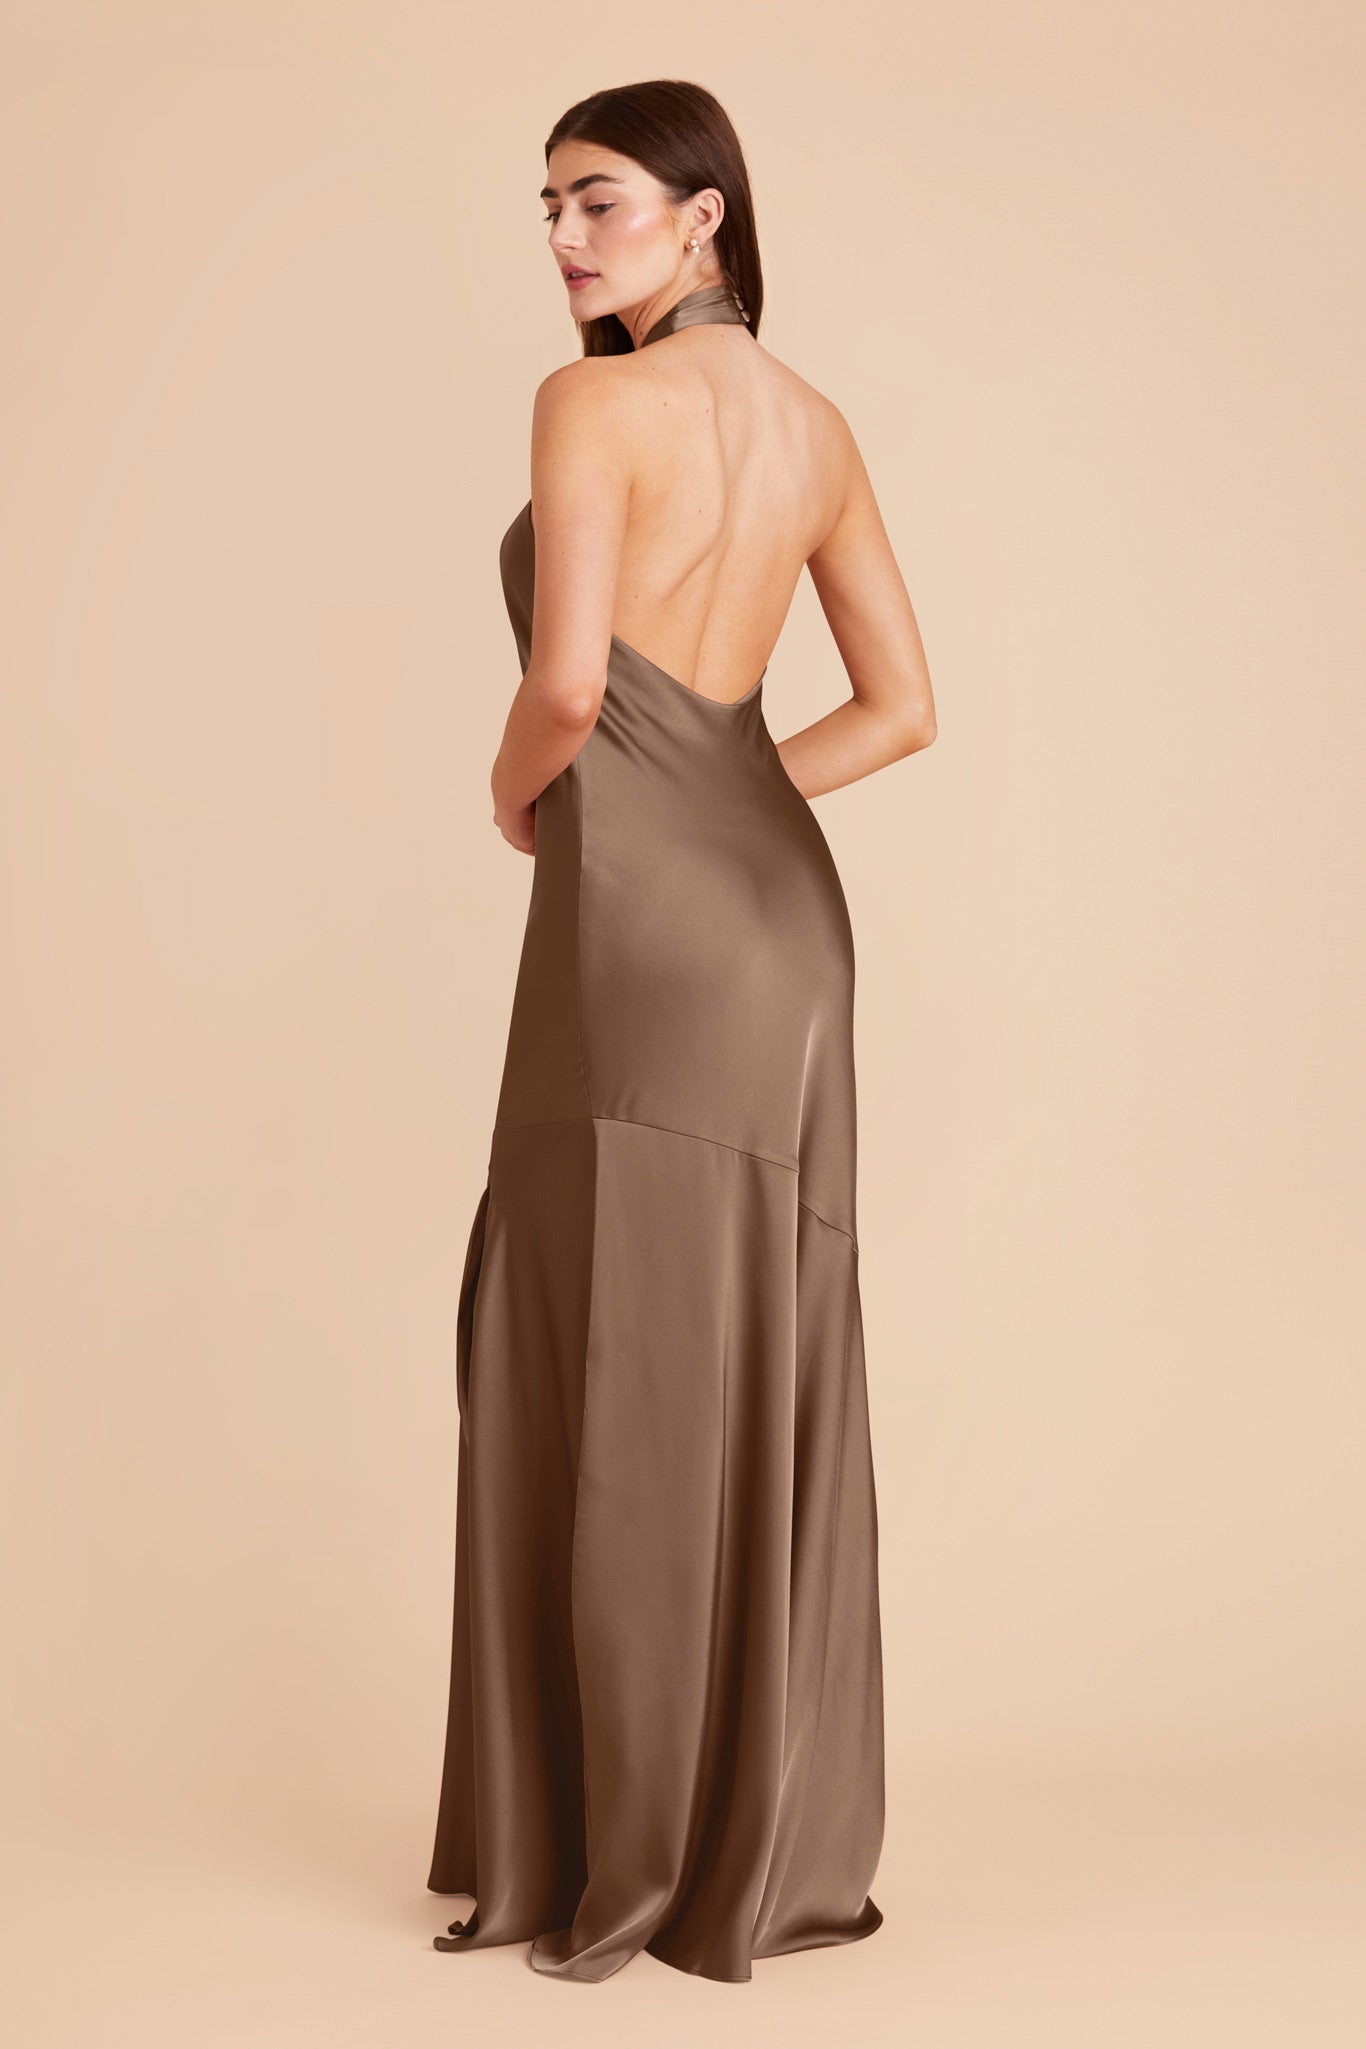 Mocha Stephanie Matte Satin Dress by Birdy Grey